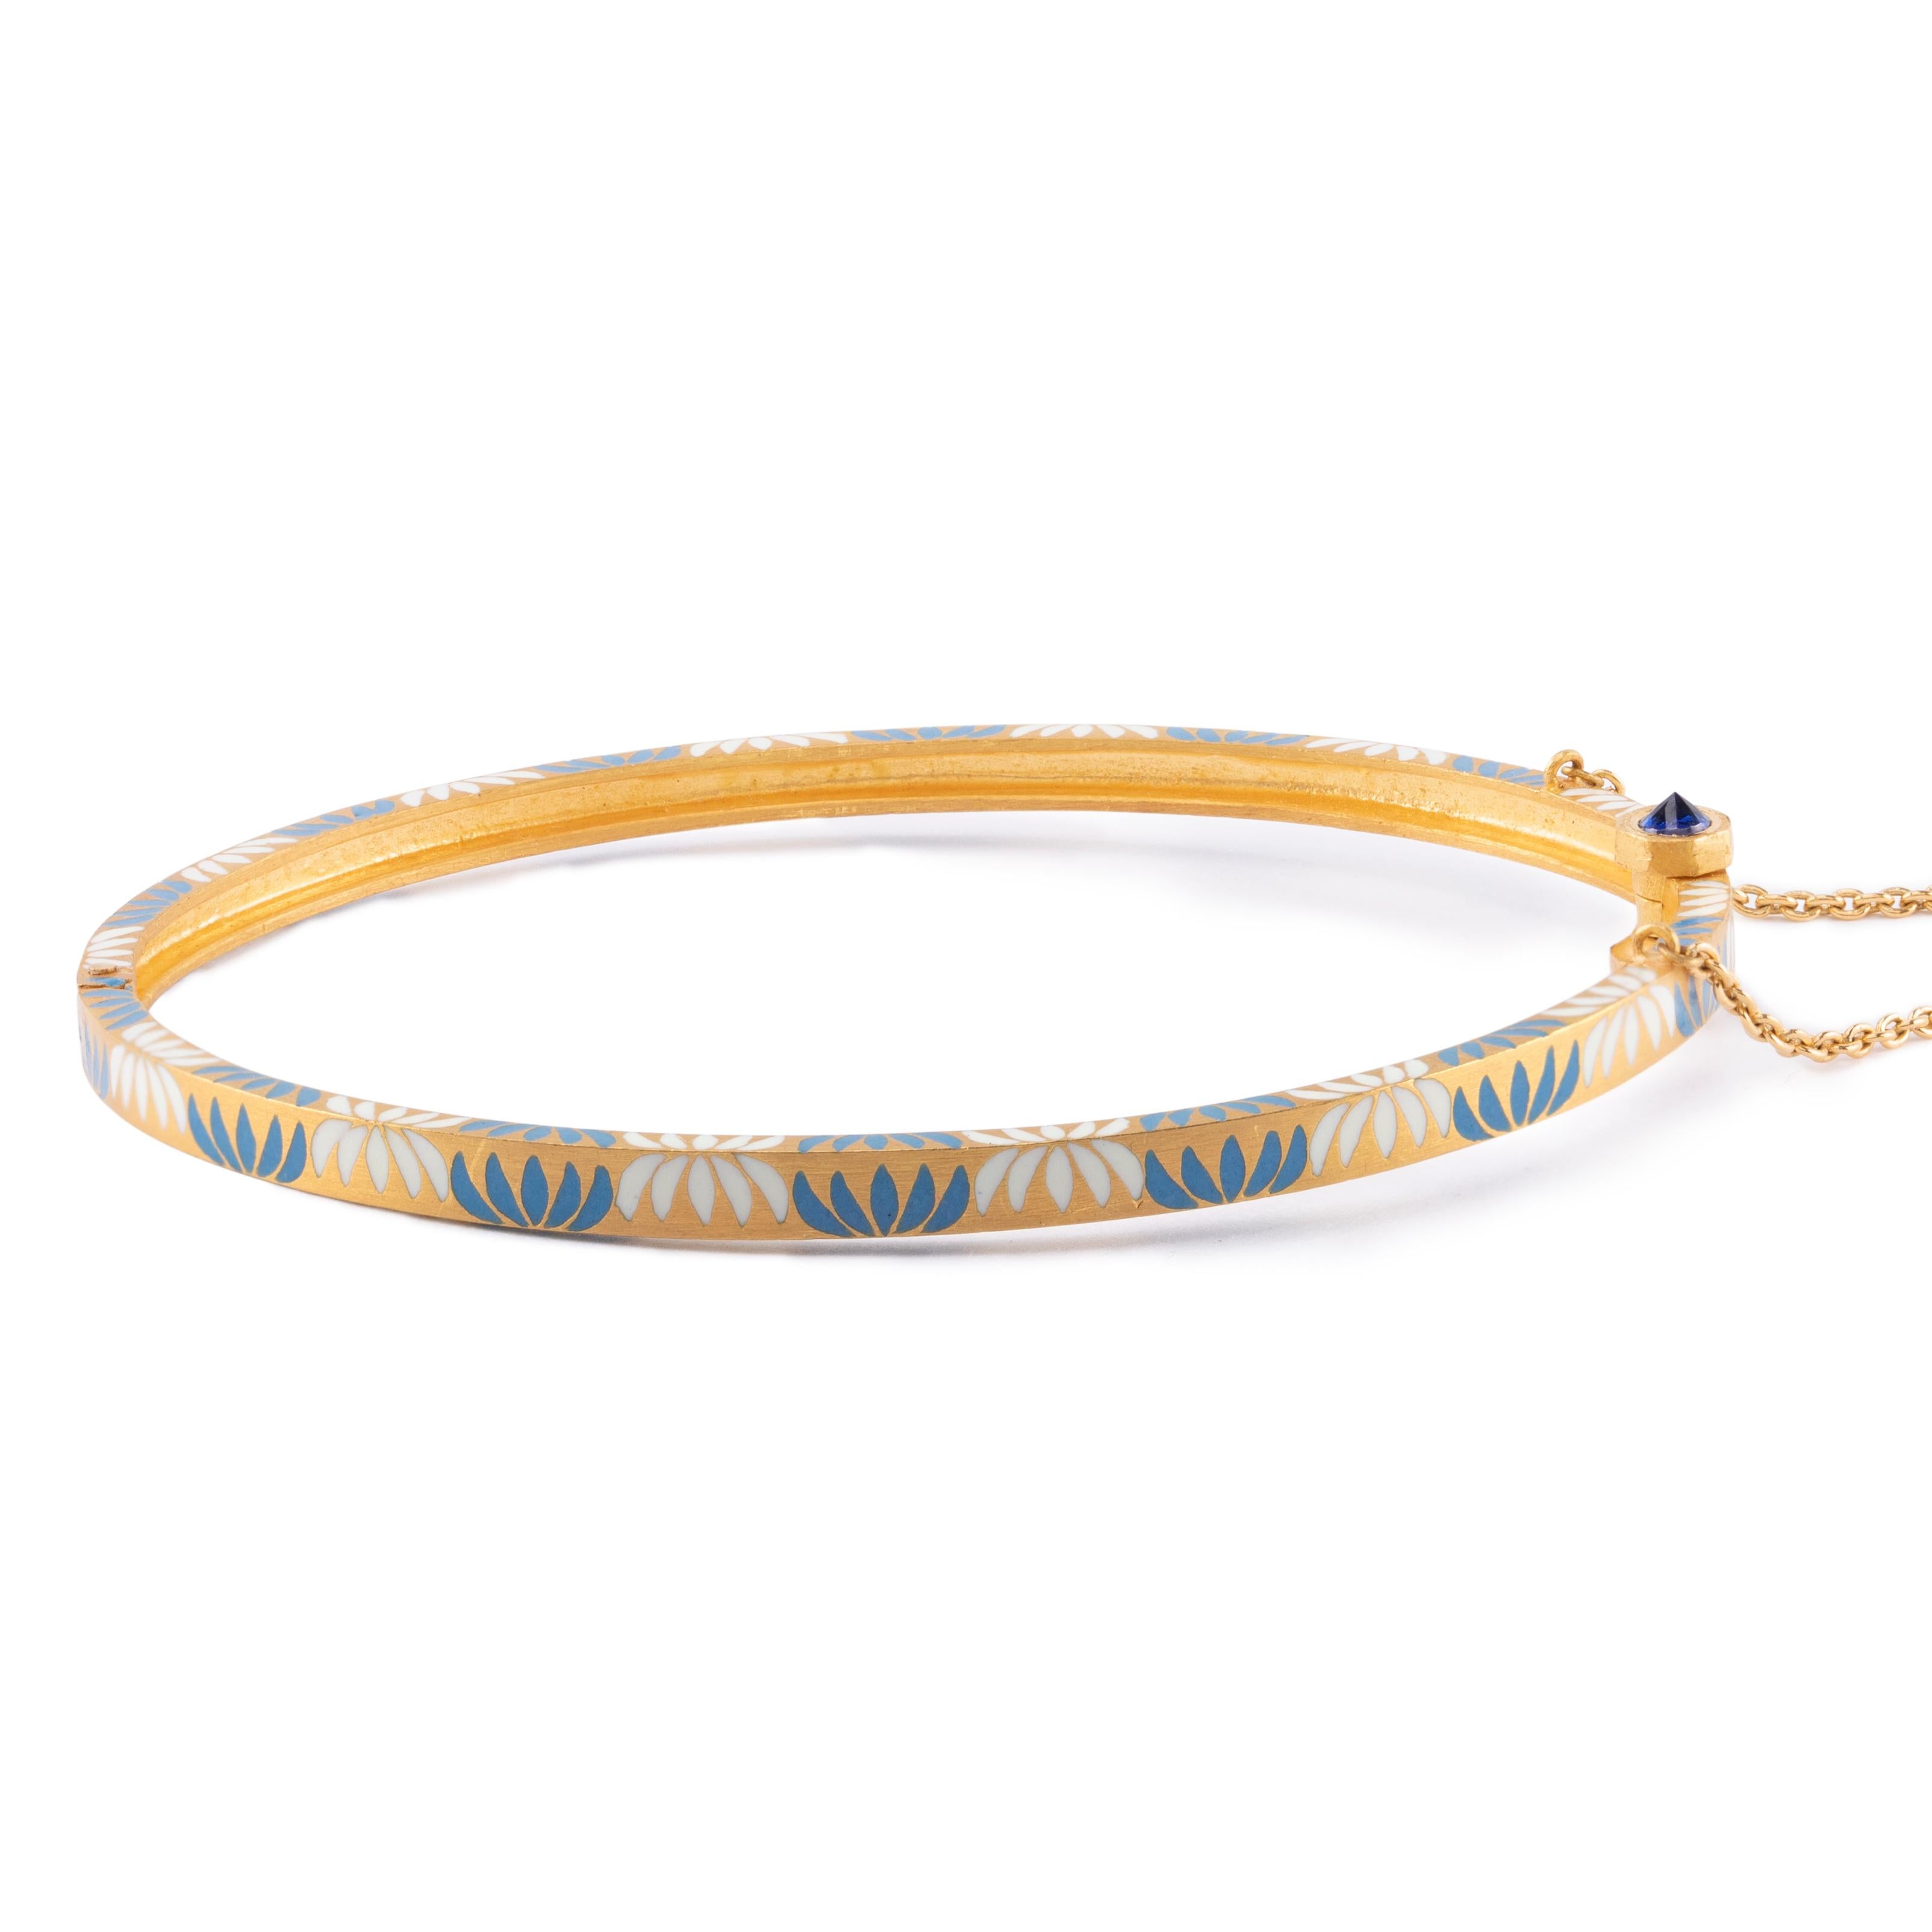 Die Summe aller Summen in der Ewigkeit...

Dieses Lotus Ananta (Unendlichkeit) Armband ist Teil der Ananta Collection'S von Agaro Jewels. Alle Agaro-Schmuckstücke werden vollständig handgefertigt, graviert und mit heiß gebranntem Glasemail